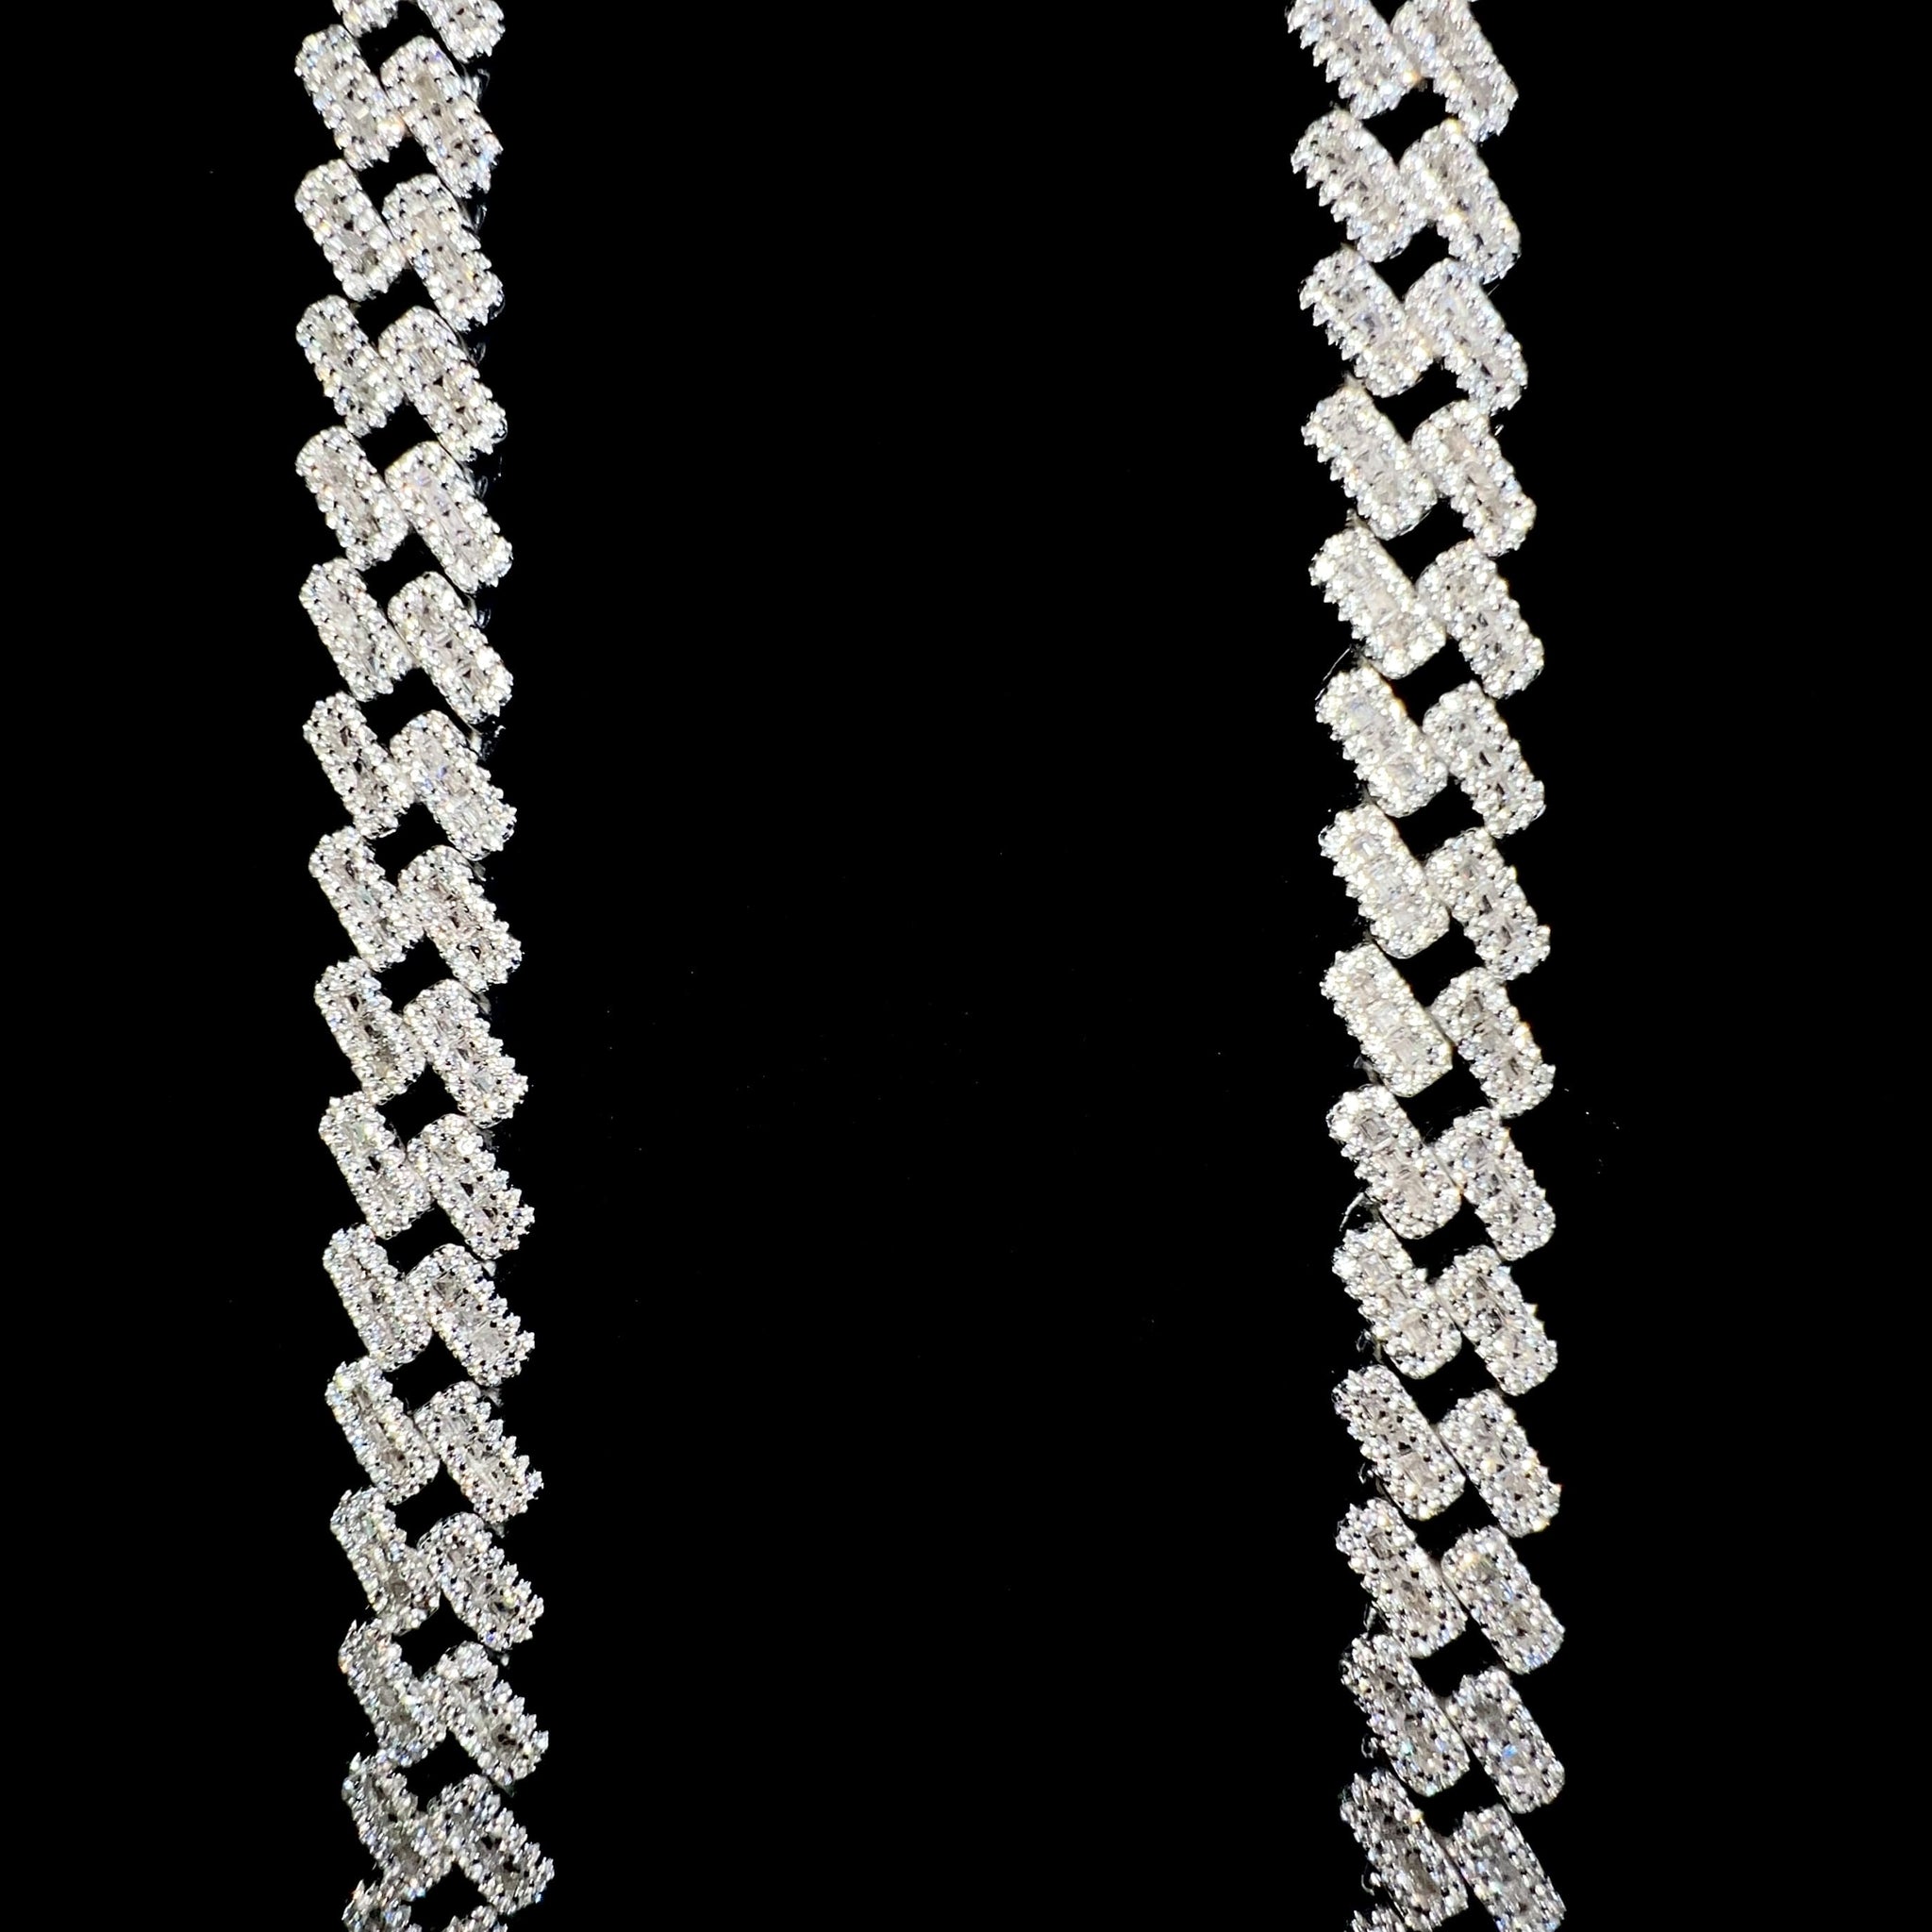 Baguette Cuban Prong Link Chain - 60cm / 10mm - Silver 925 - Sehgal Dubai Collection